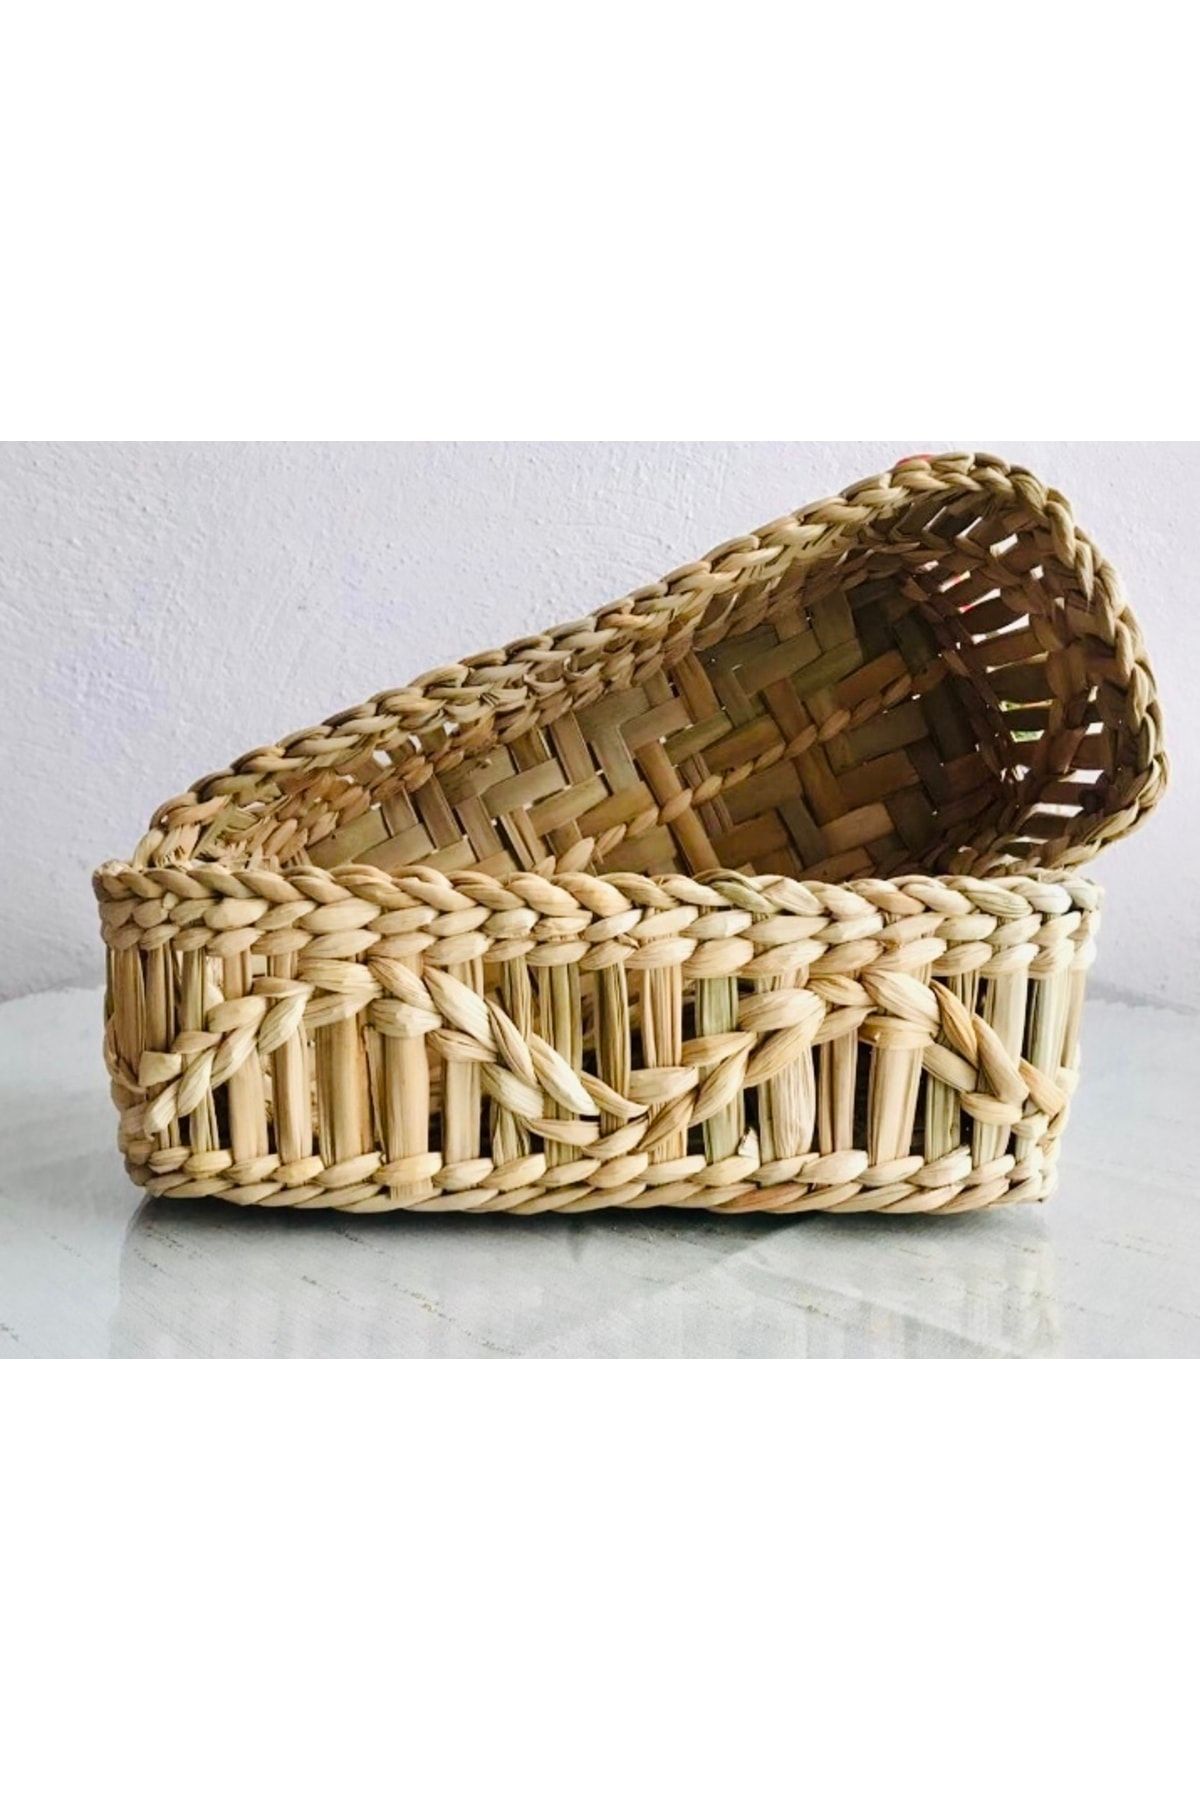 AFRALYAHOME Hasır Ekmeklik / Hasır Düzenleyici / Ev Dekorasyon Hasır Sepet 28 Cm